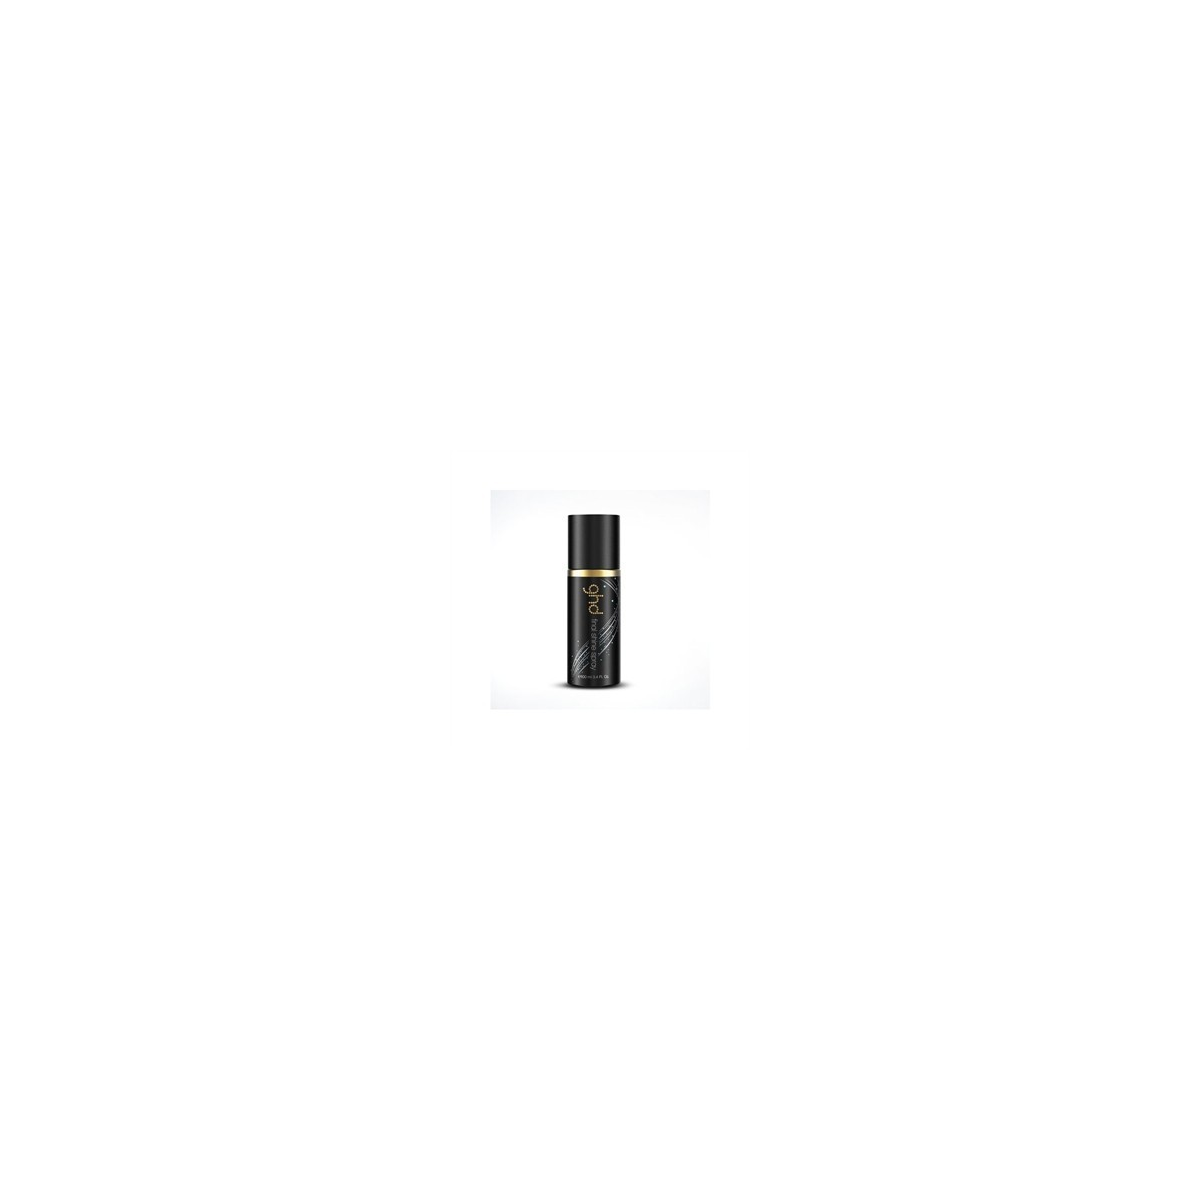 GHD - FINAL SHINE (100ml) Spray lucidante